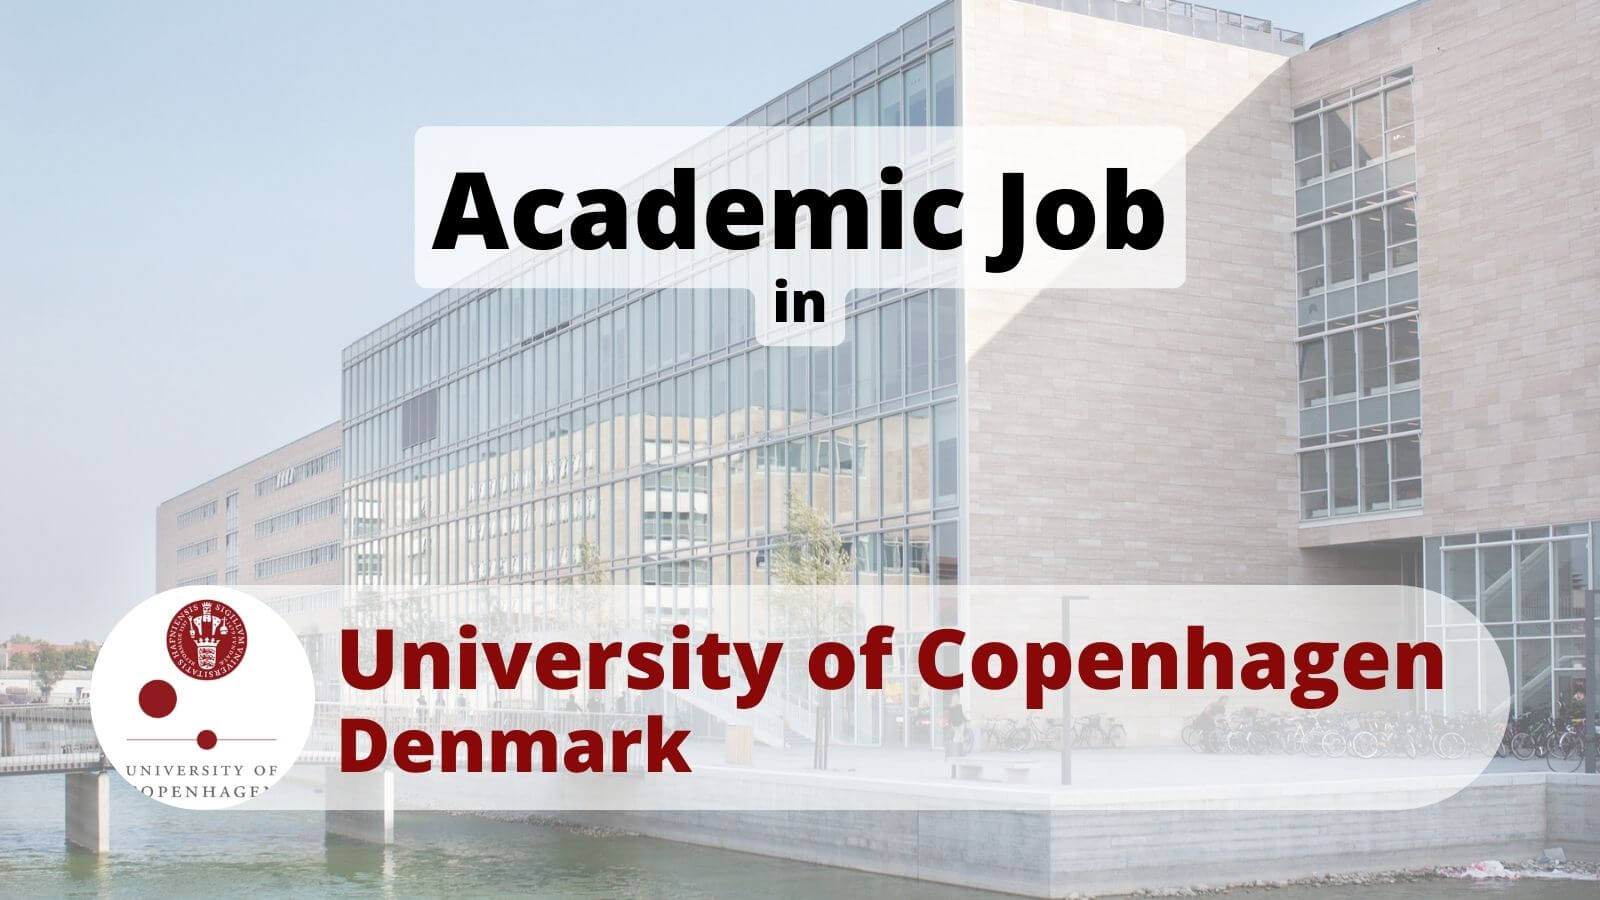 Academic job in UCPH University of Copenhagen, Denmark